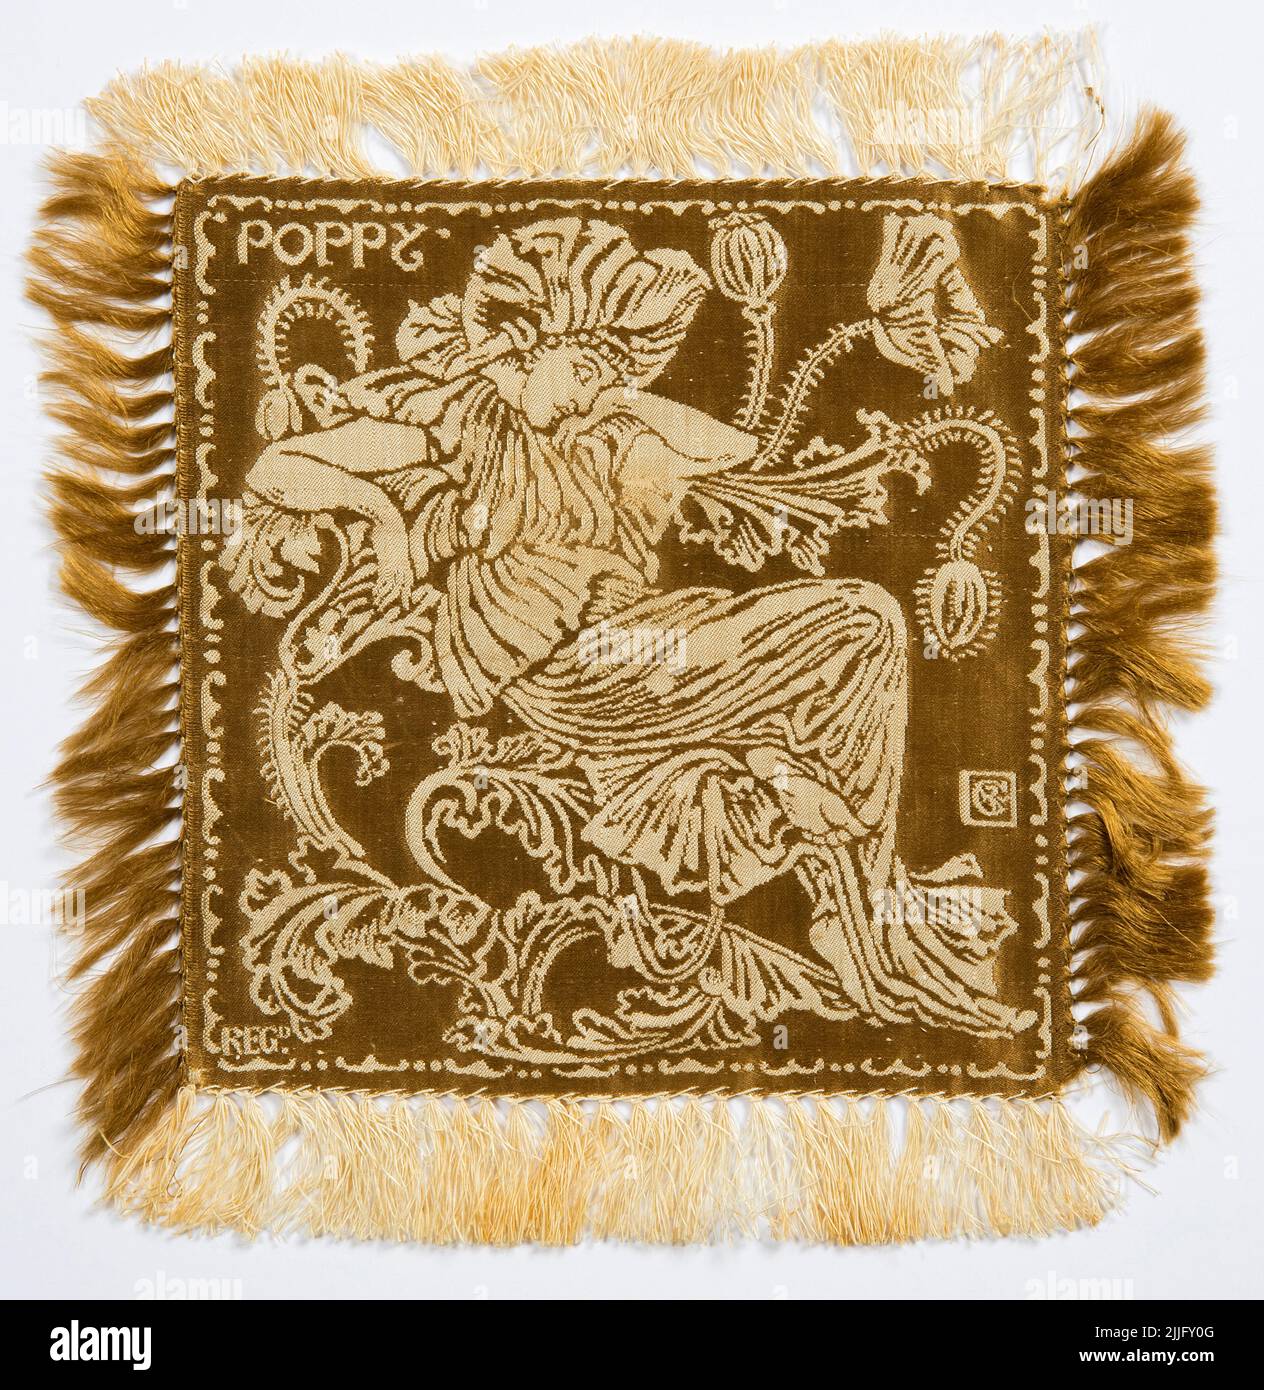 Walter Crane, rétine de Flora : pavot (Doily), tissu en chaîne de lin avec trame de soie, vers 1891 Banque D'Images